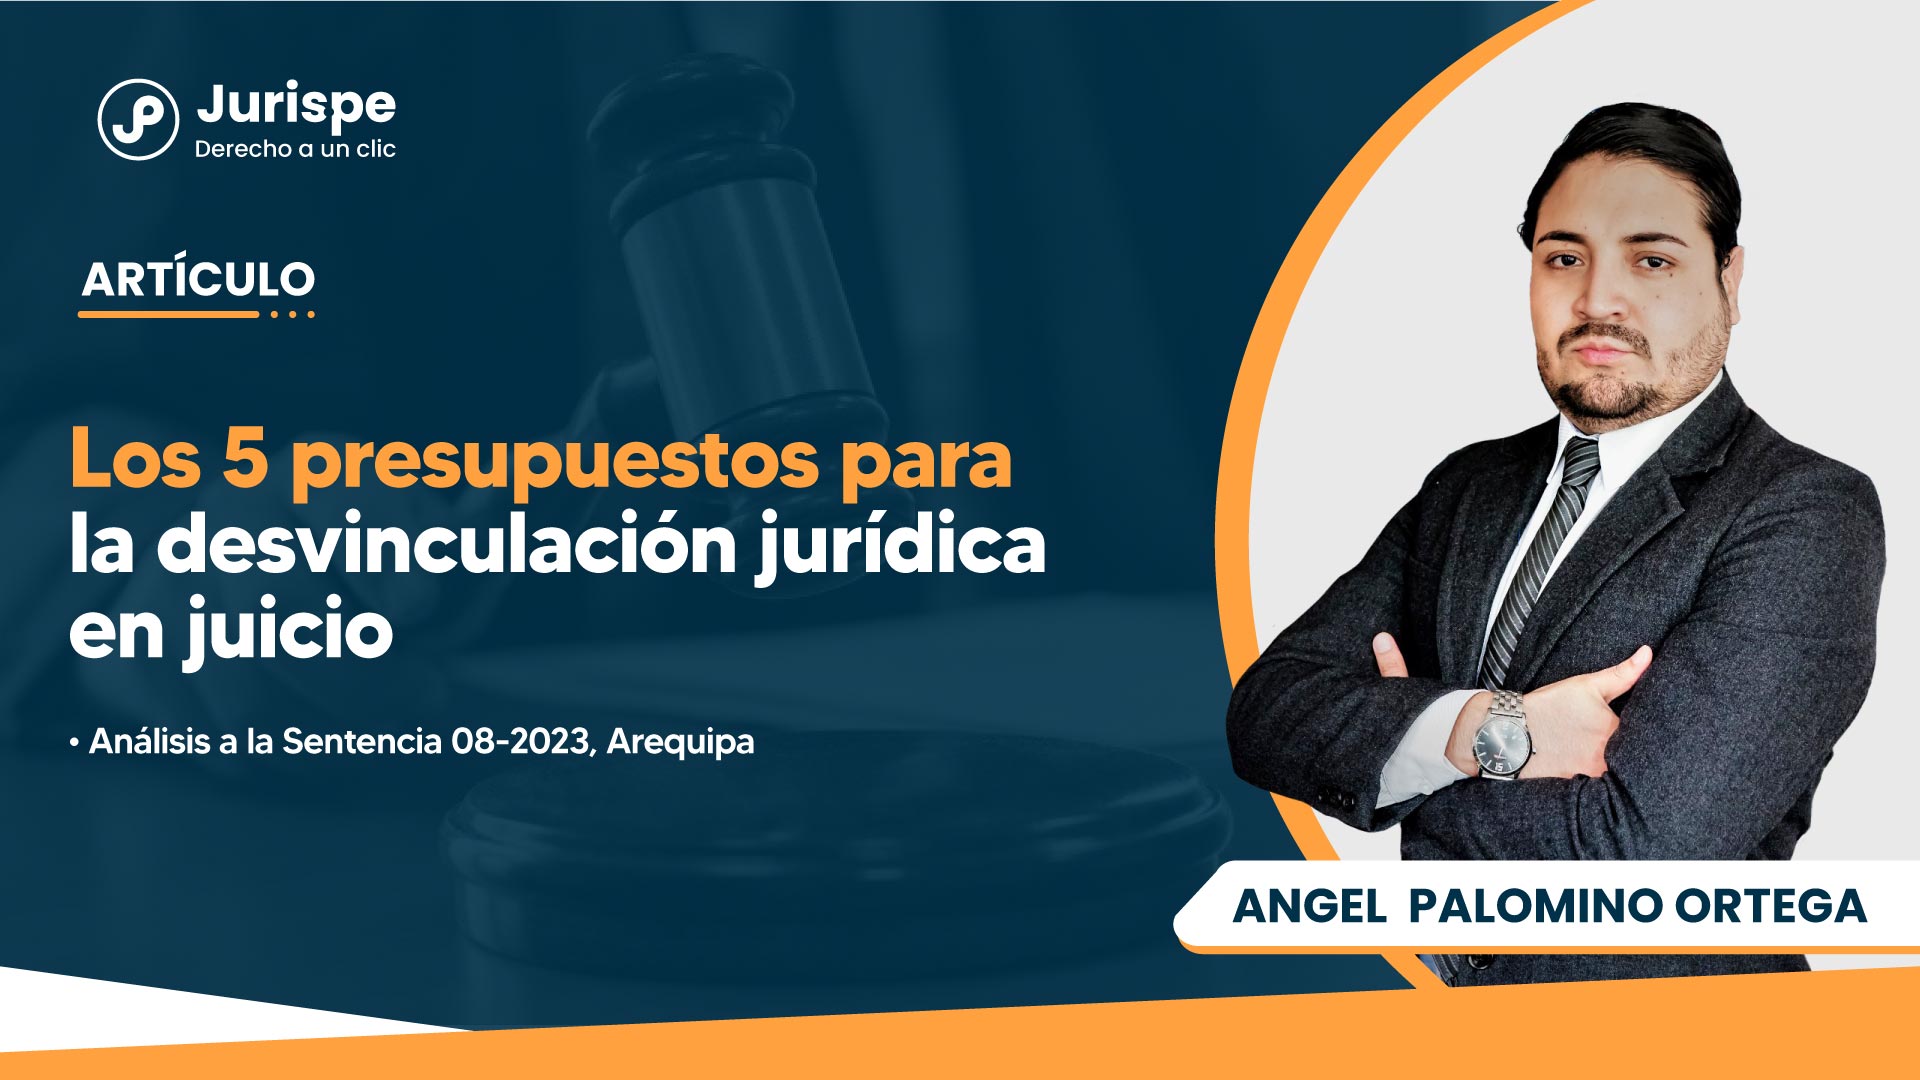 Los 5 presupuestos para la desvinculación jurídica en juicio. Análisis a la Sentencia 08-2023, Arequipa